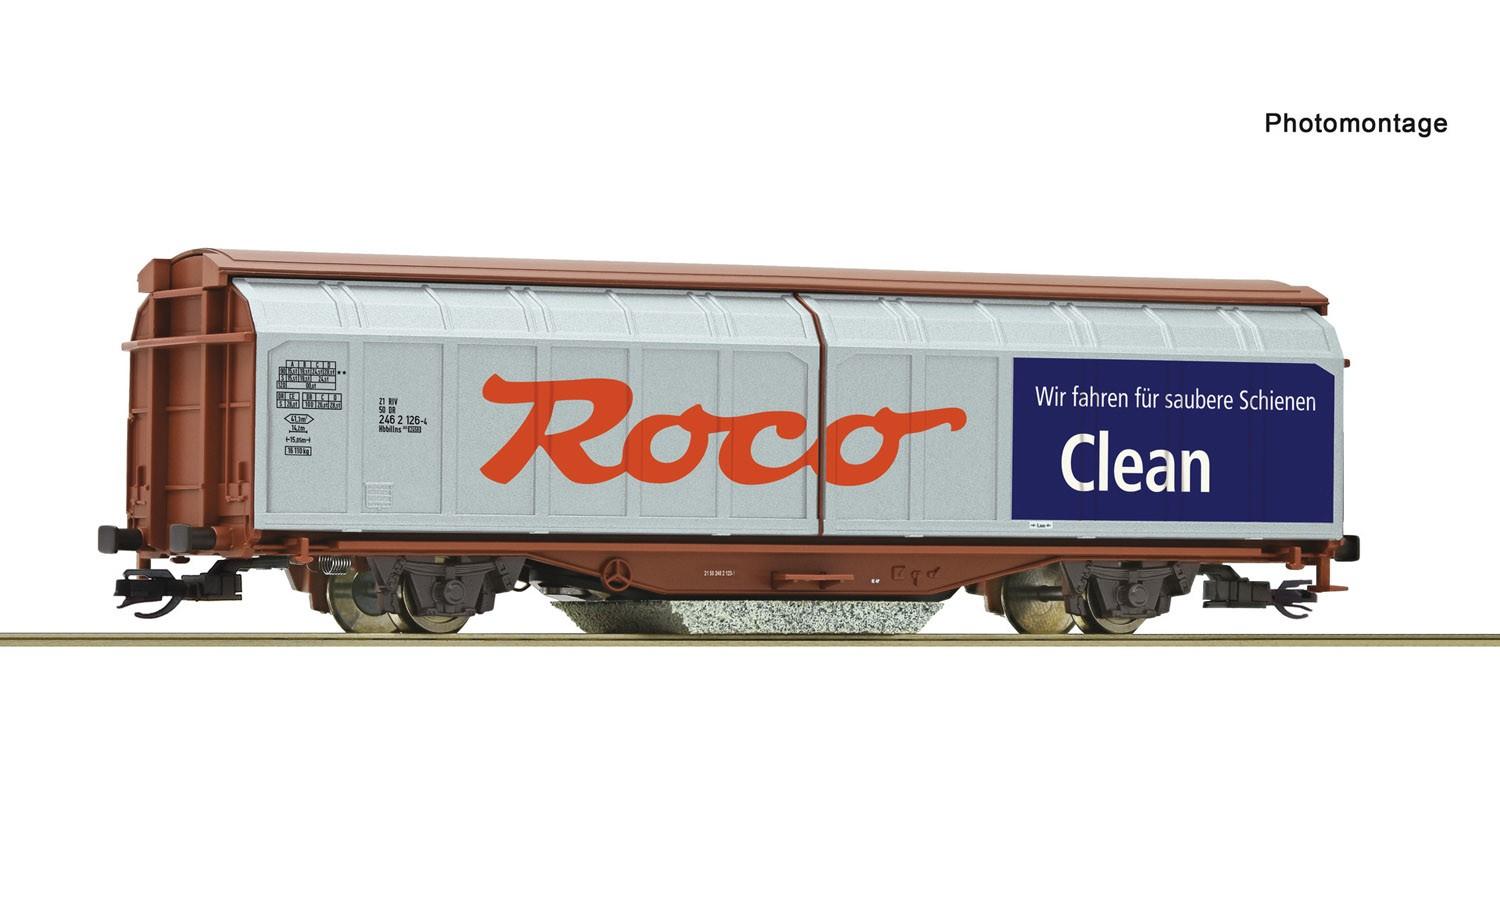 Roco 6680005 ROCO Clean Wagen